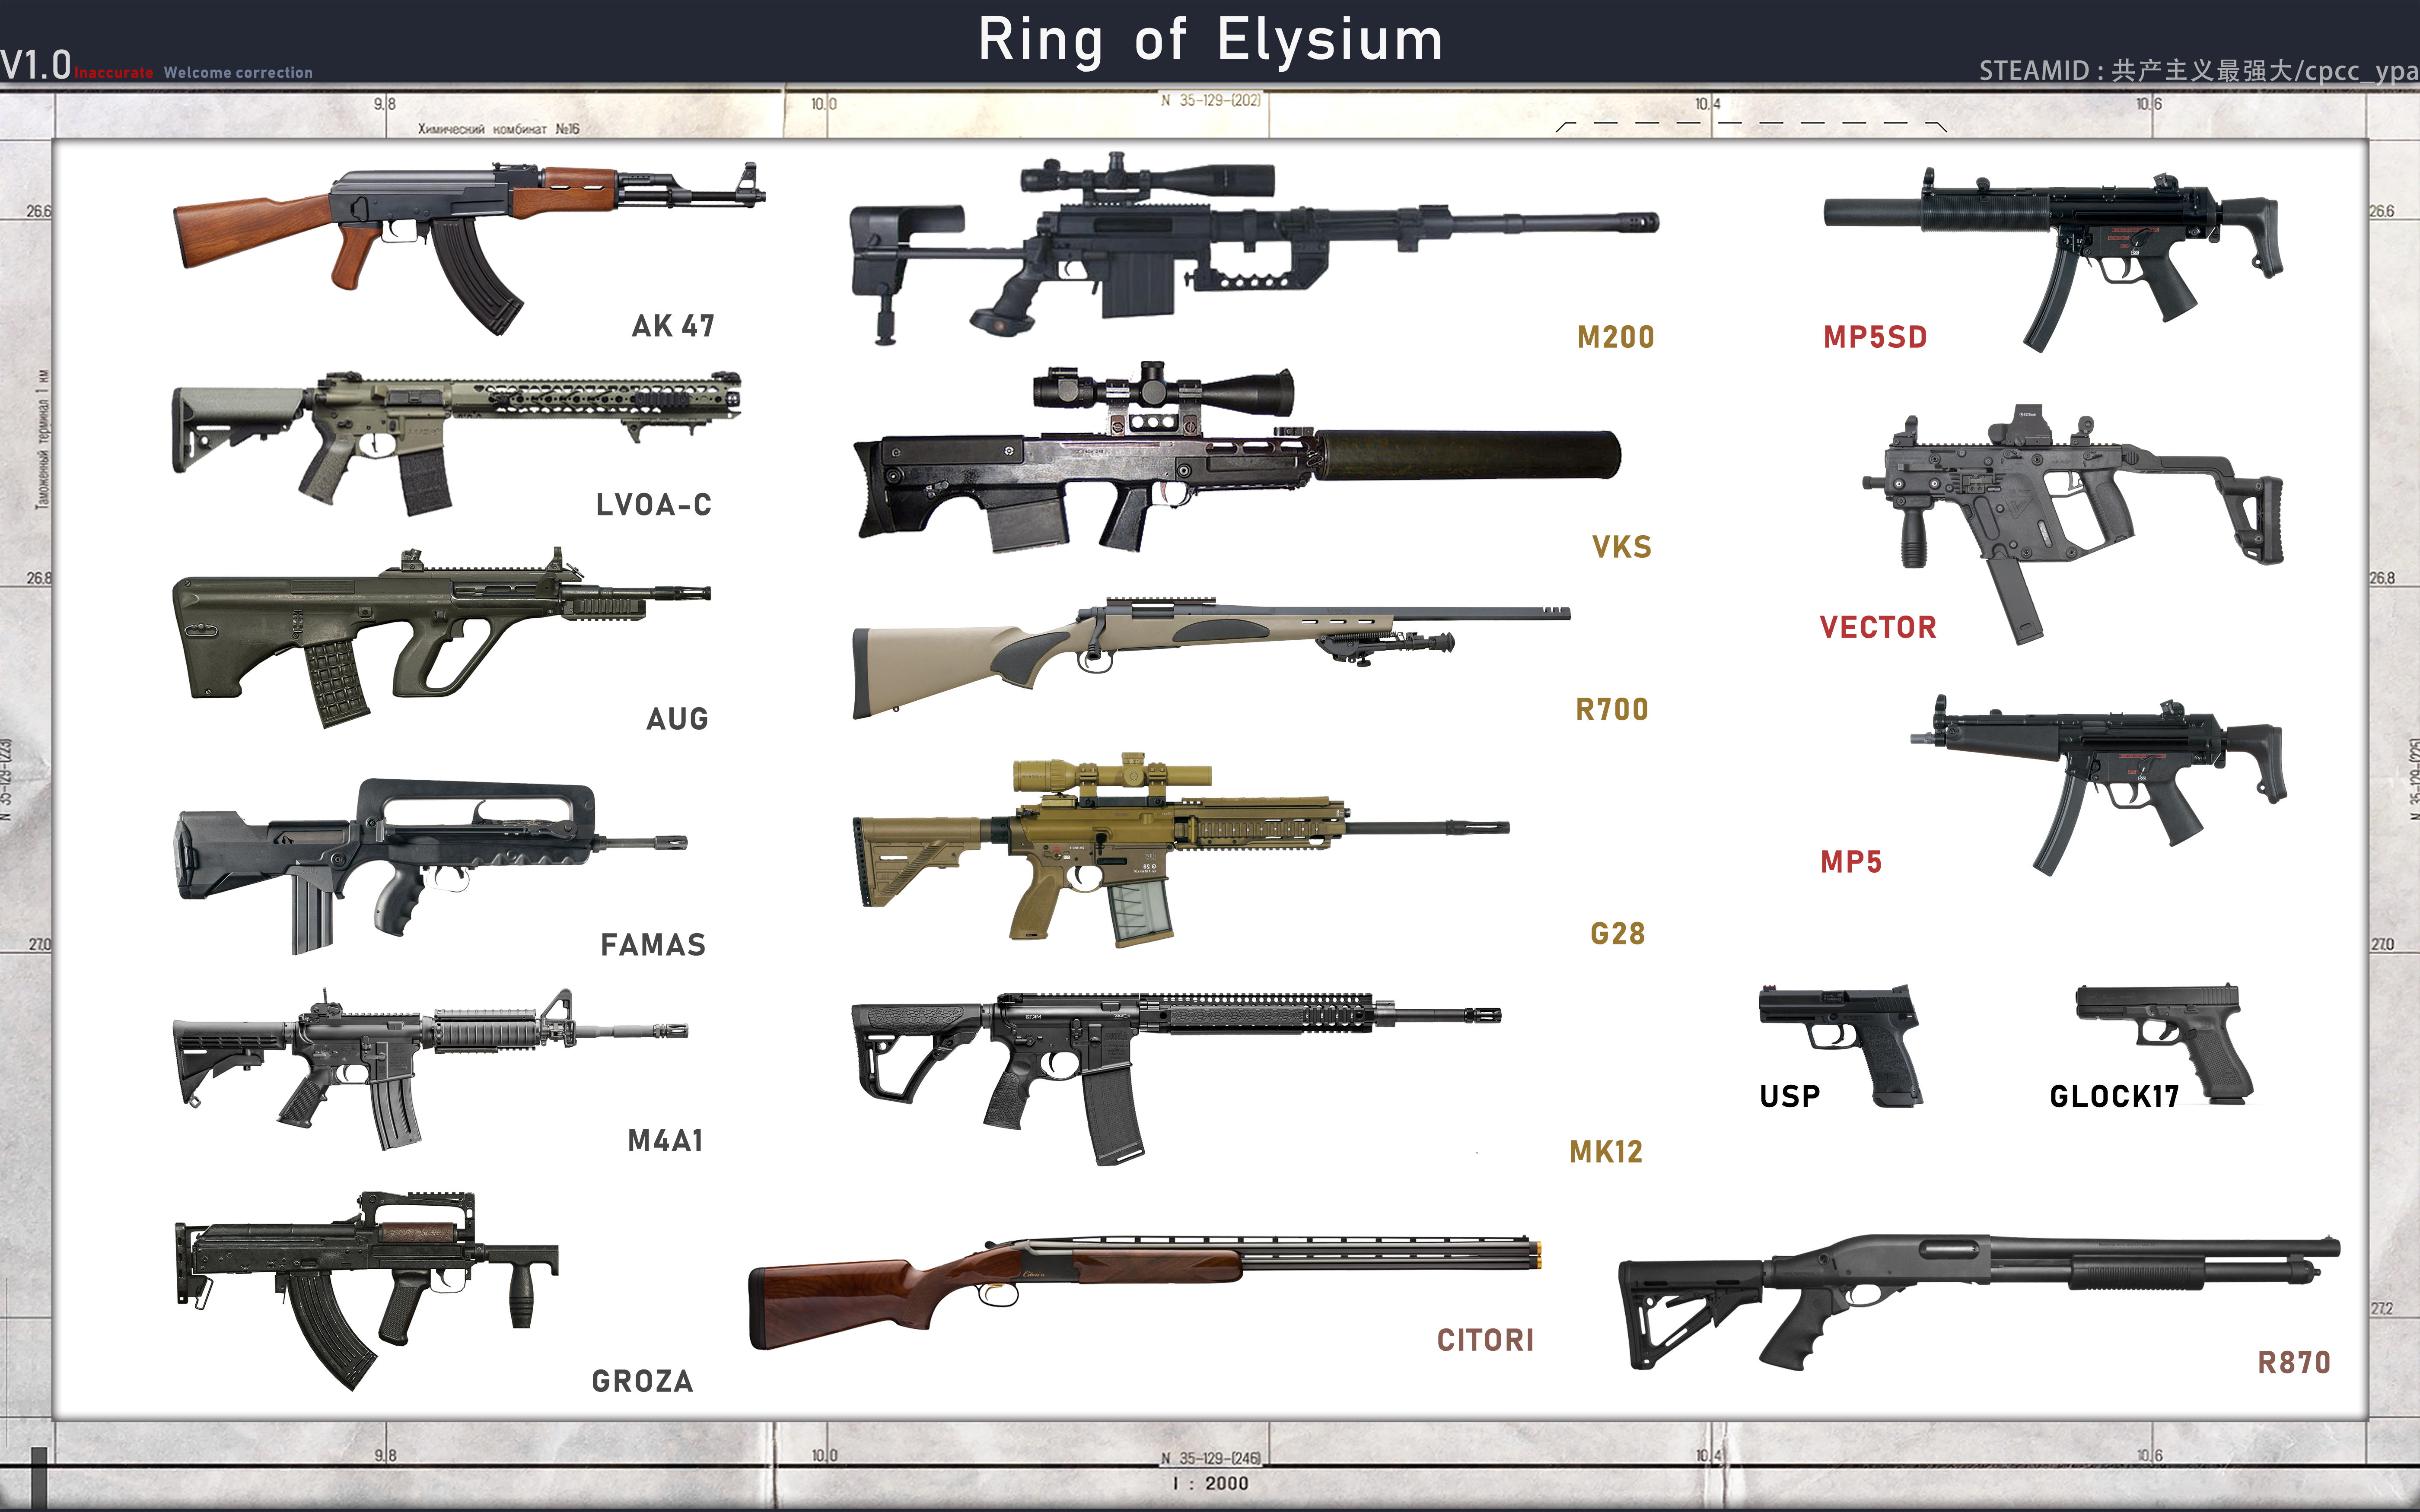 Шв в пабге. Ring of Elysium урон оружия. Таблица оружия. Самое популярное оружие. Виды оружия и их названия.